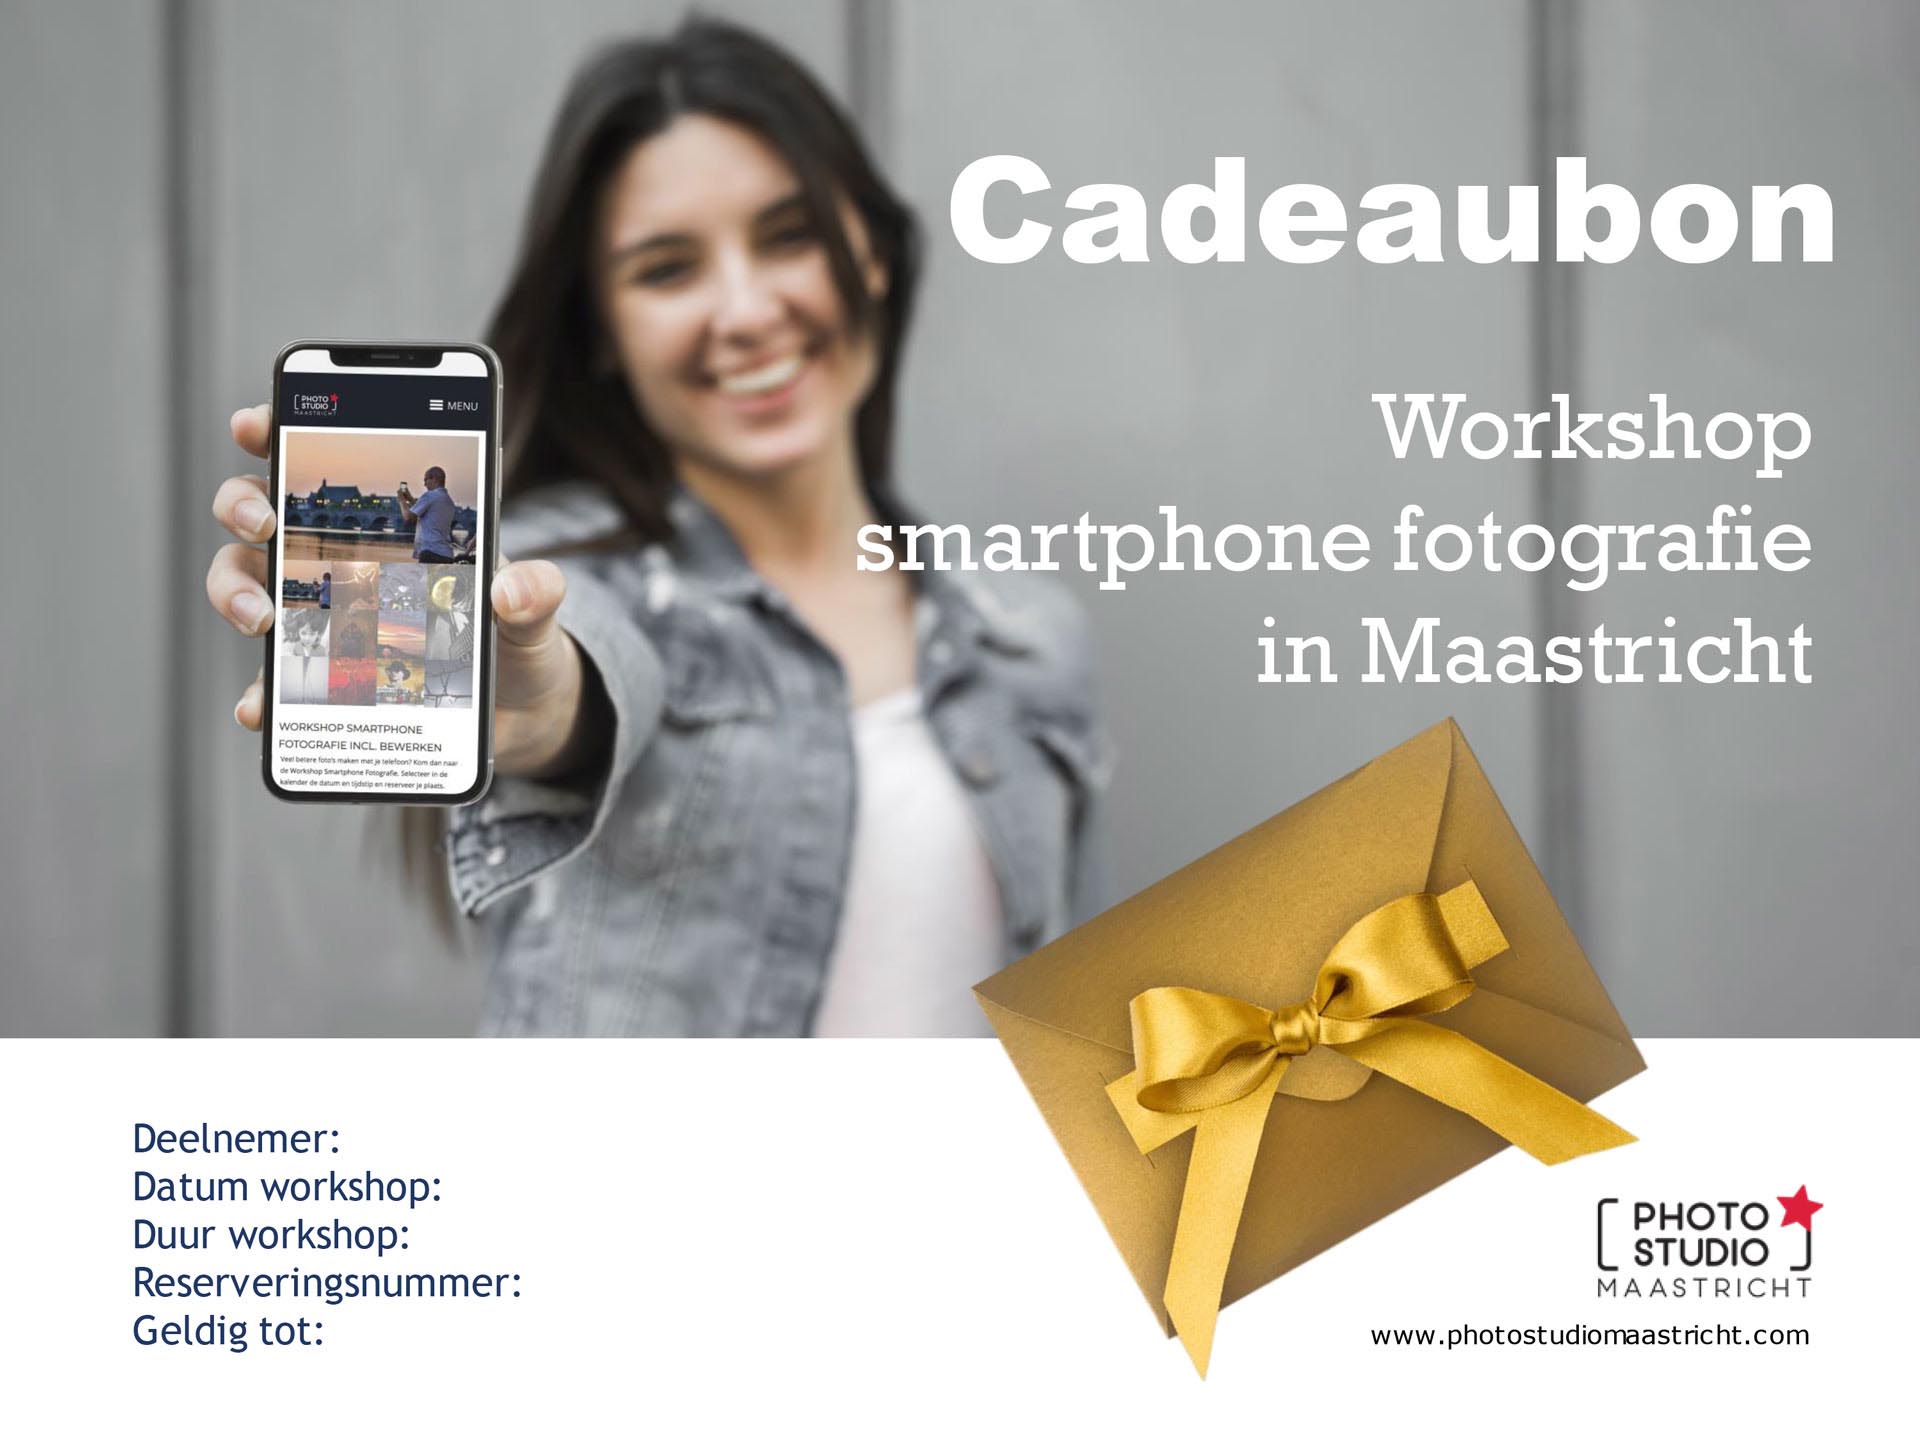 Cadeaubon workshop smartphone fotografie in Maastricht